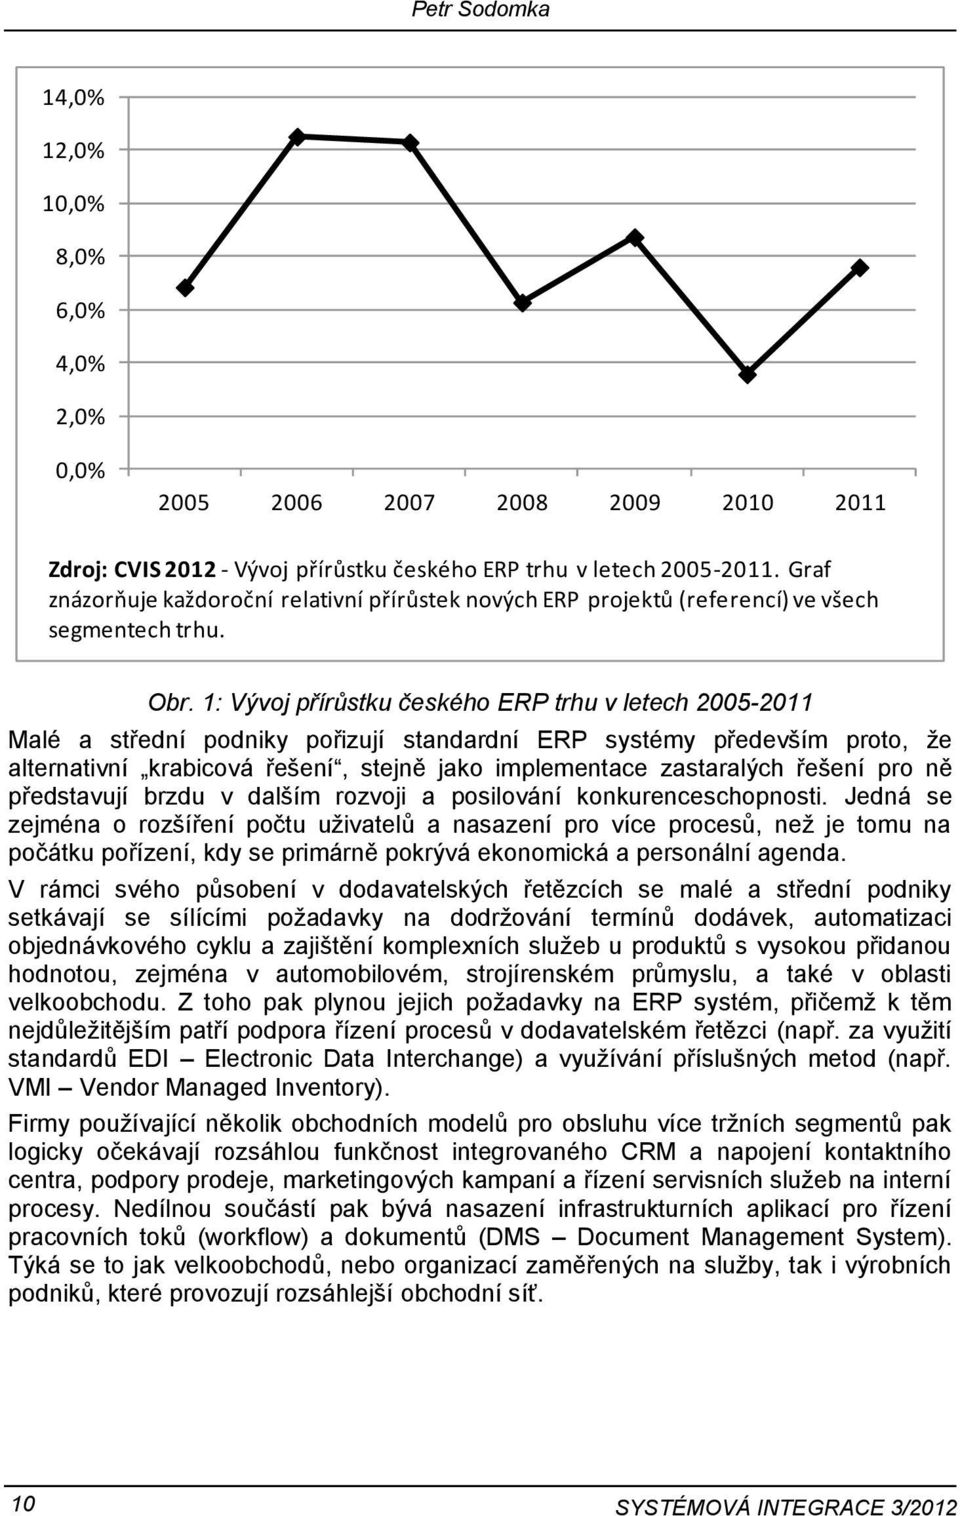 1: Vývoj přírůstku českého ERP trhu v letech 2005-2011 Malé a střední podniky pořizují standardní ERP systémy především proto, že alternativní krabicová řešení, stejně jako implementace zastaralých